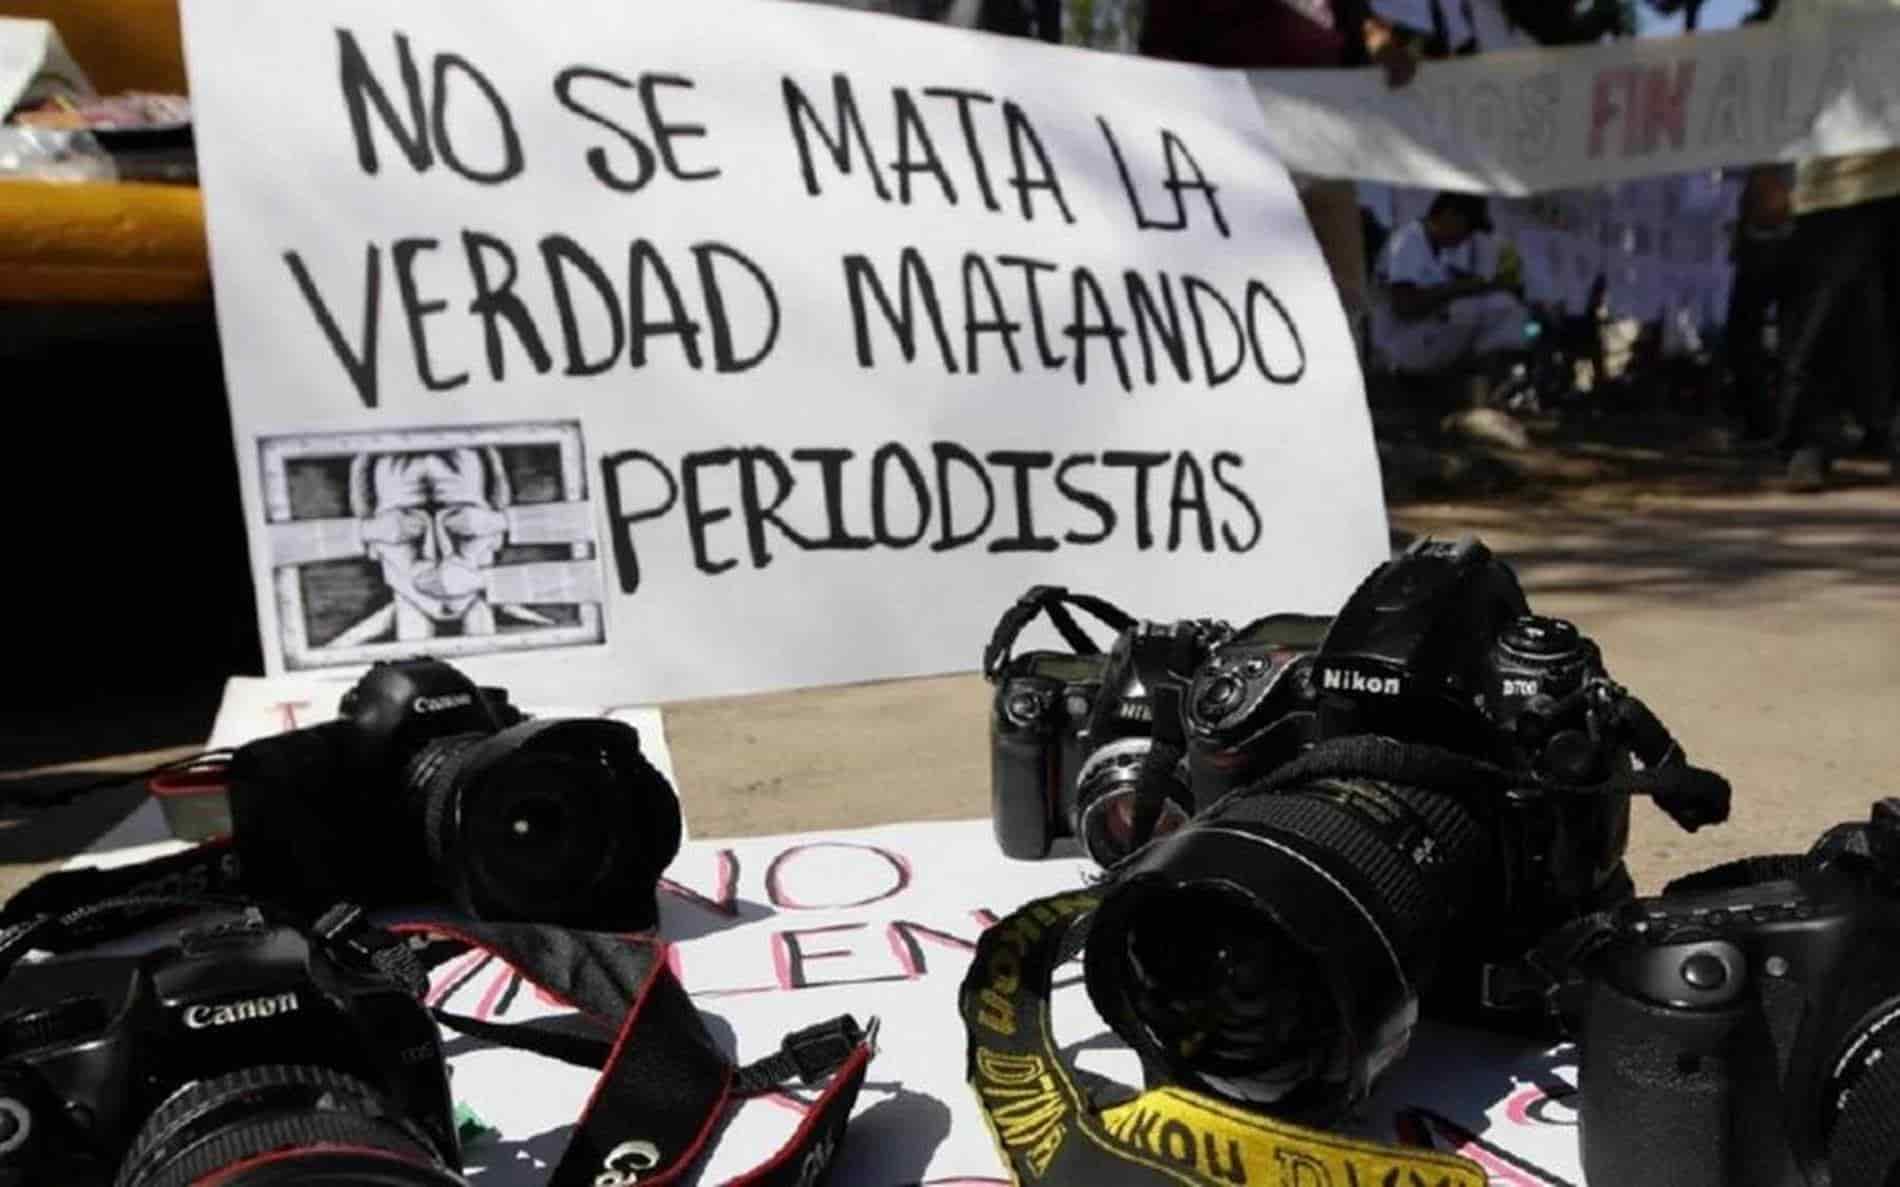 Periodistas de todo el país protestan contra la violencia